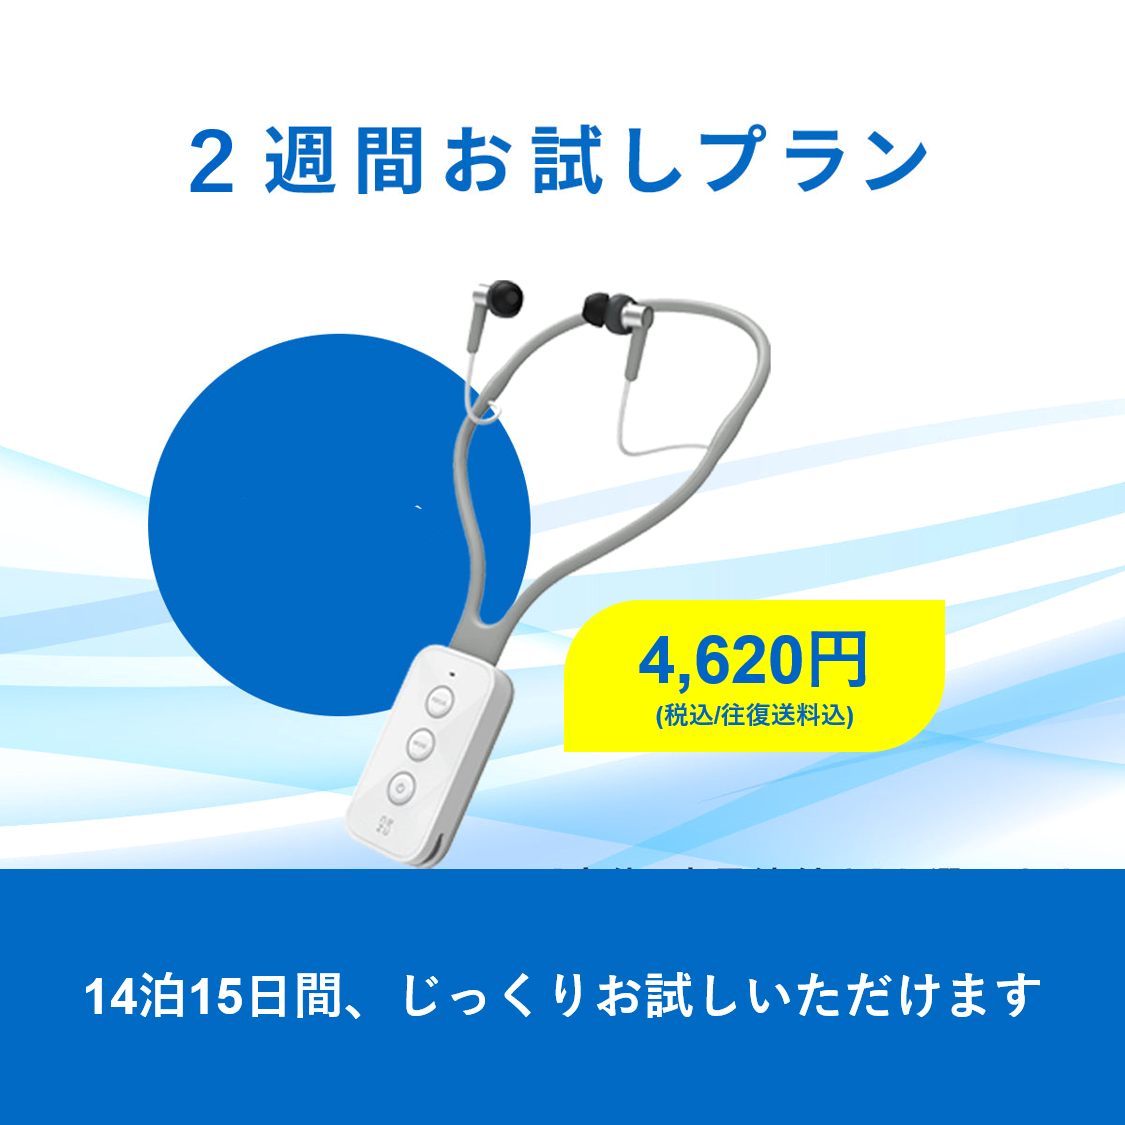 【新規申込休止中】新商品 Vibone nezu HYPER 試聴機レンタル